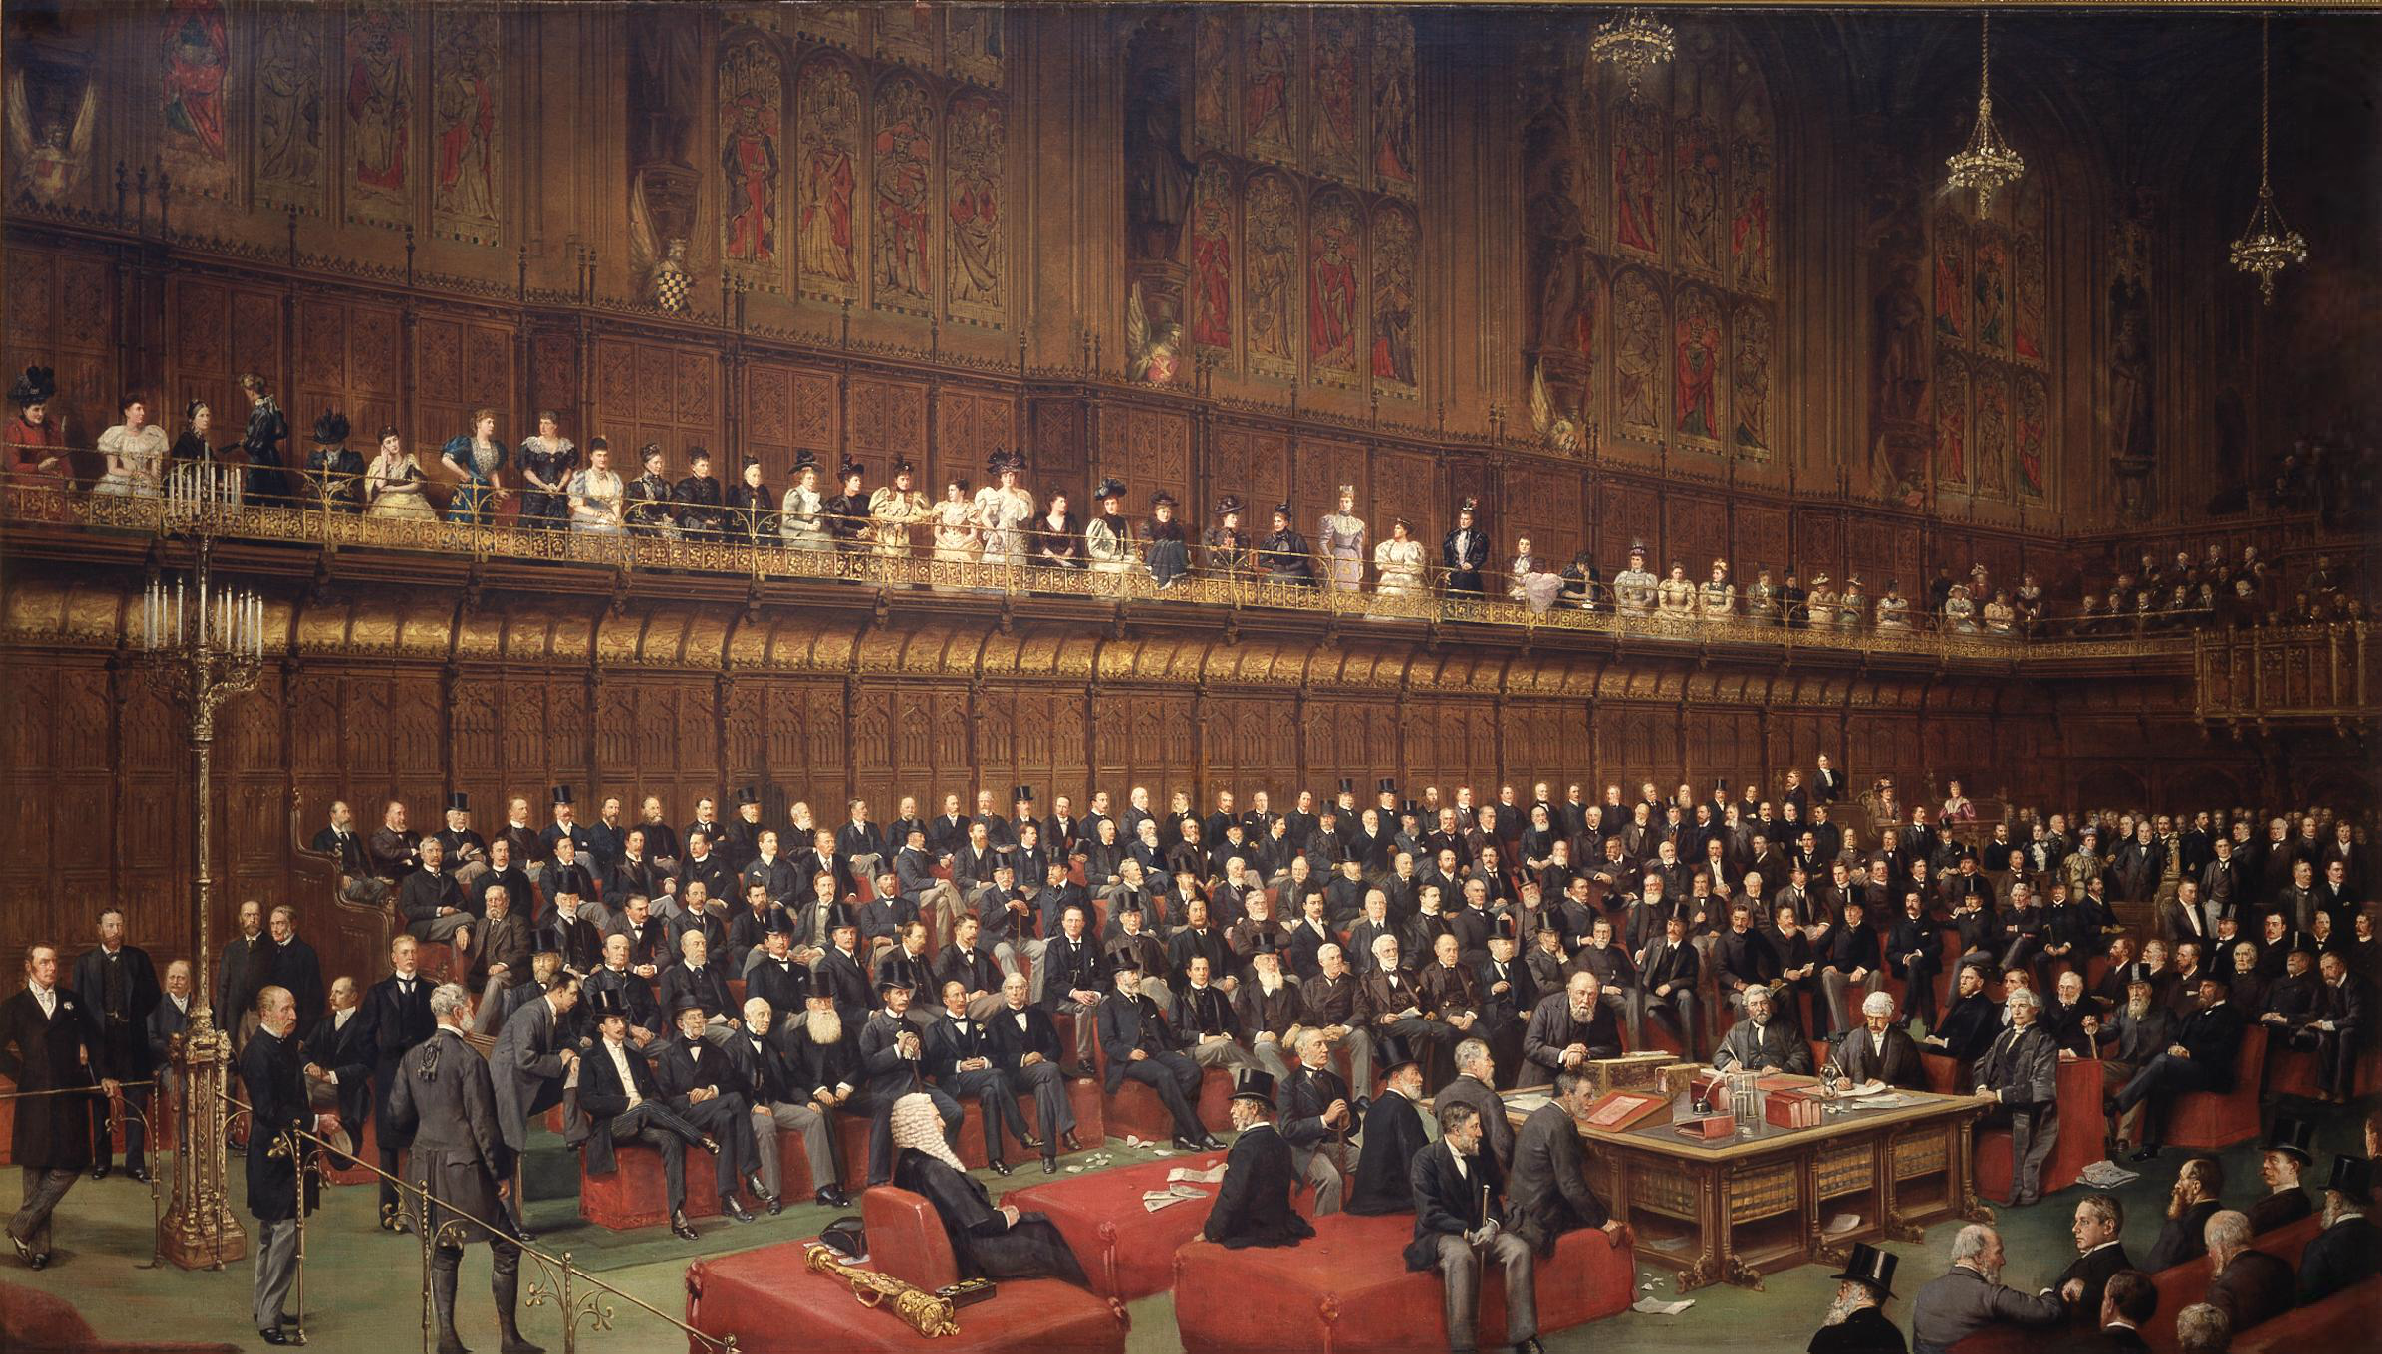 英国下议院结构图图片